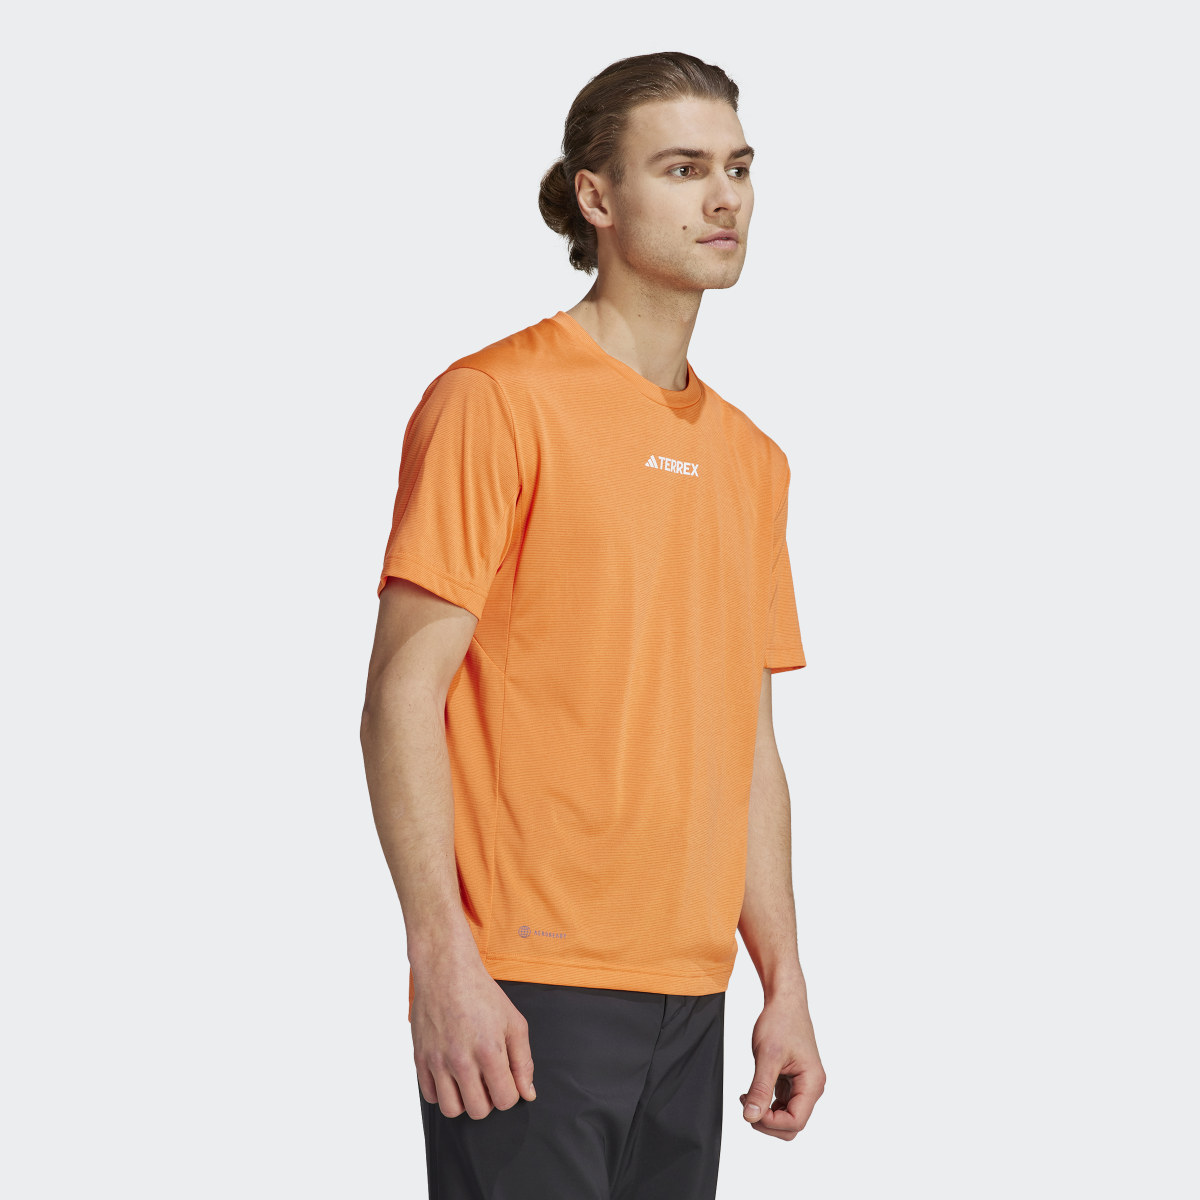 Adidas T-shirt Terrex Multi. 4